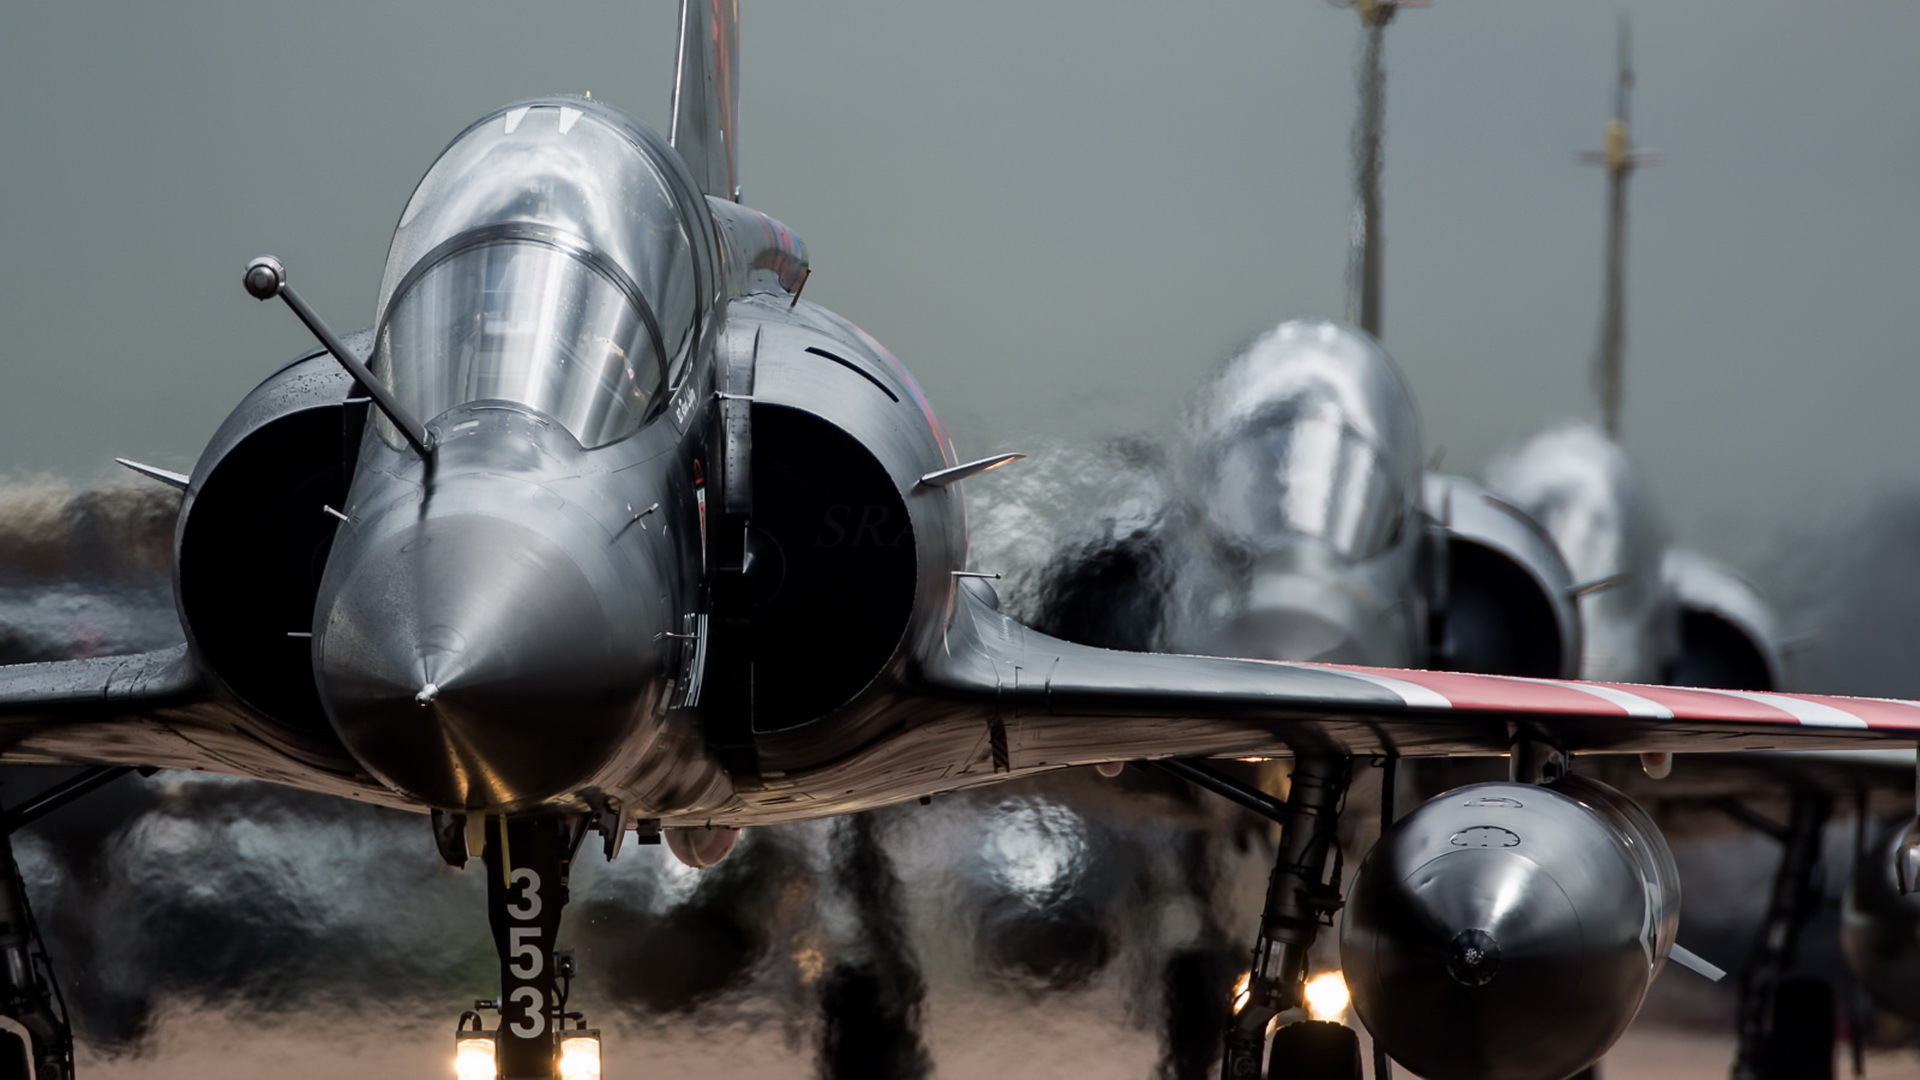 military, dassault mirage 2000, aircraft, jet fighter, warplane, jet fighters